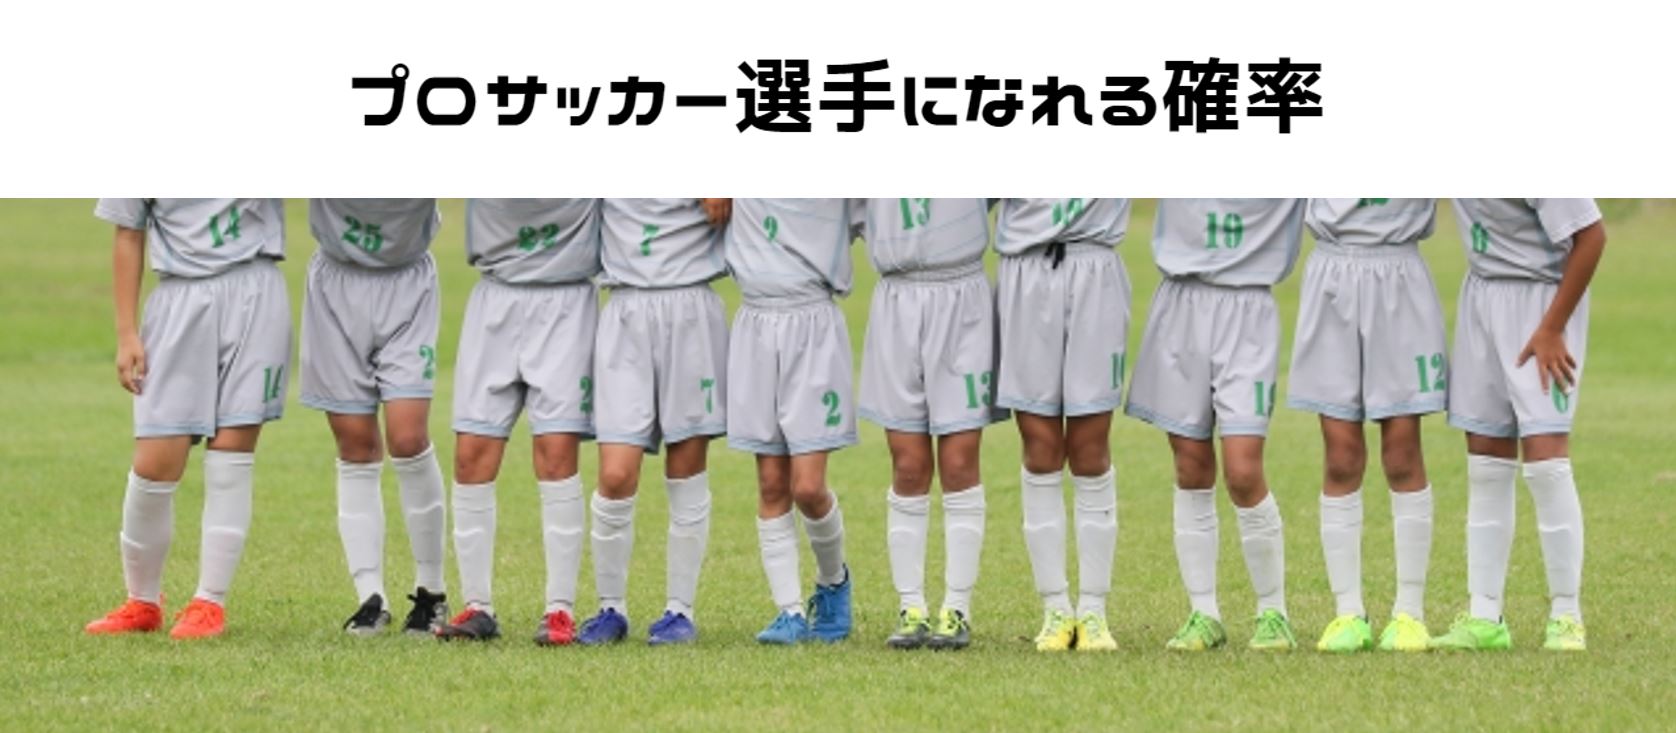 サッカー】「プロサッカー選手になれる確率」を日本の競技人口数から